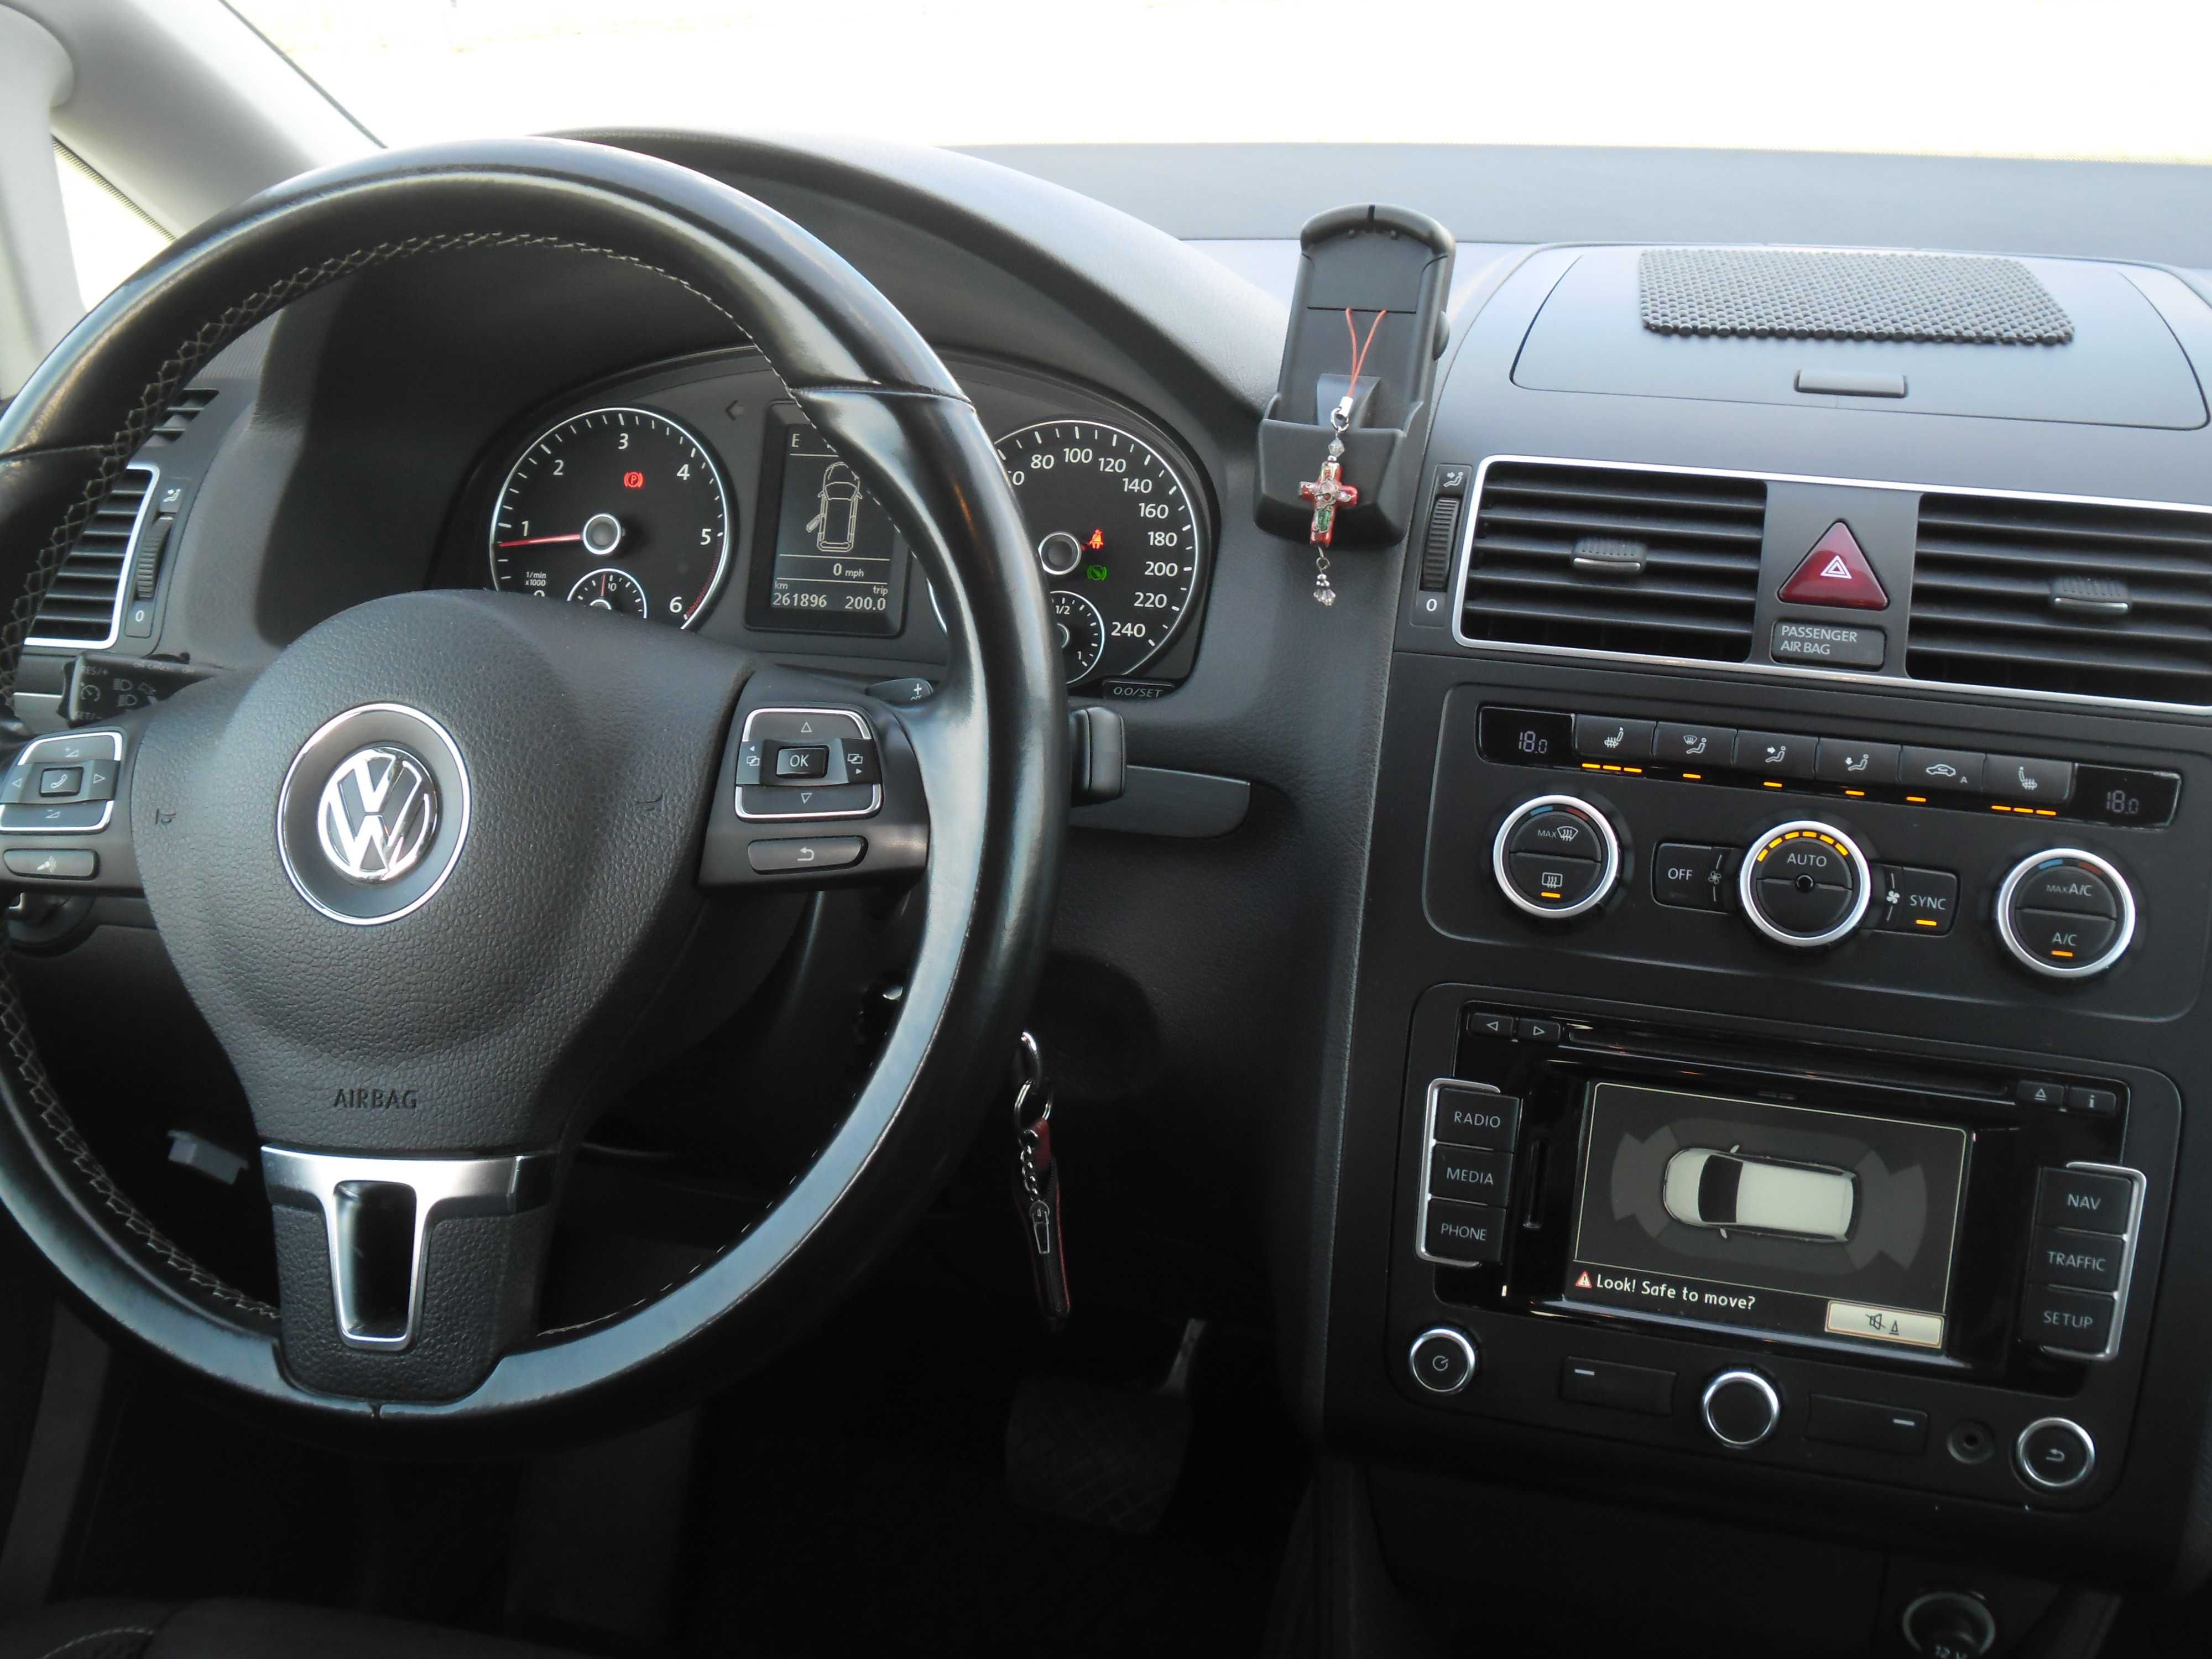 Vand Volkswagen Touran an 2015